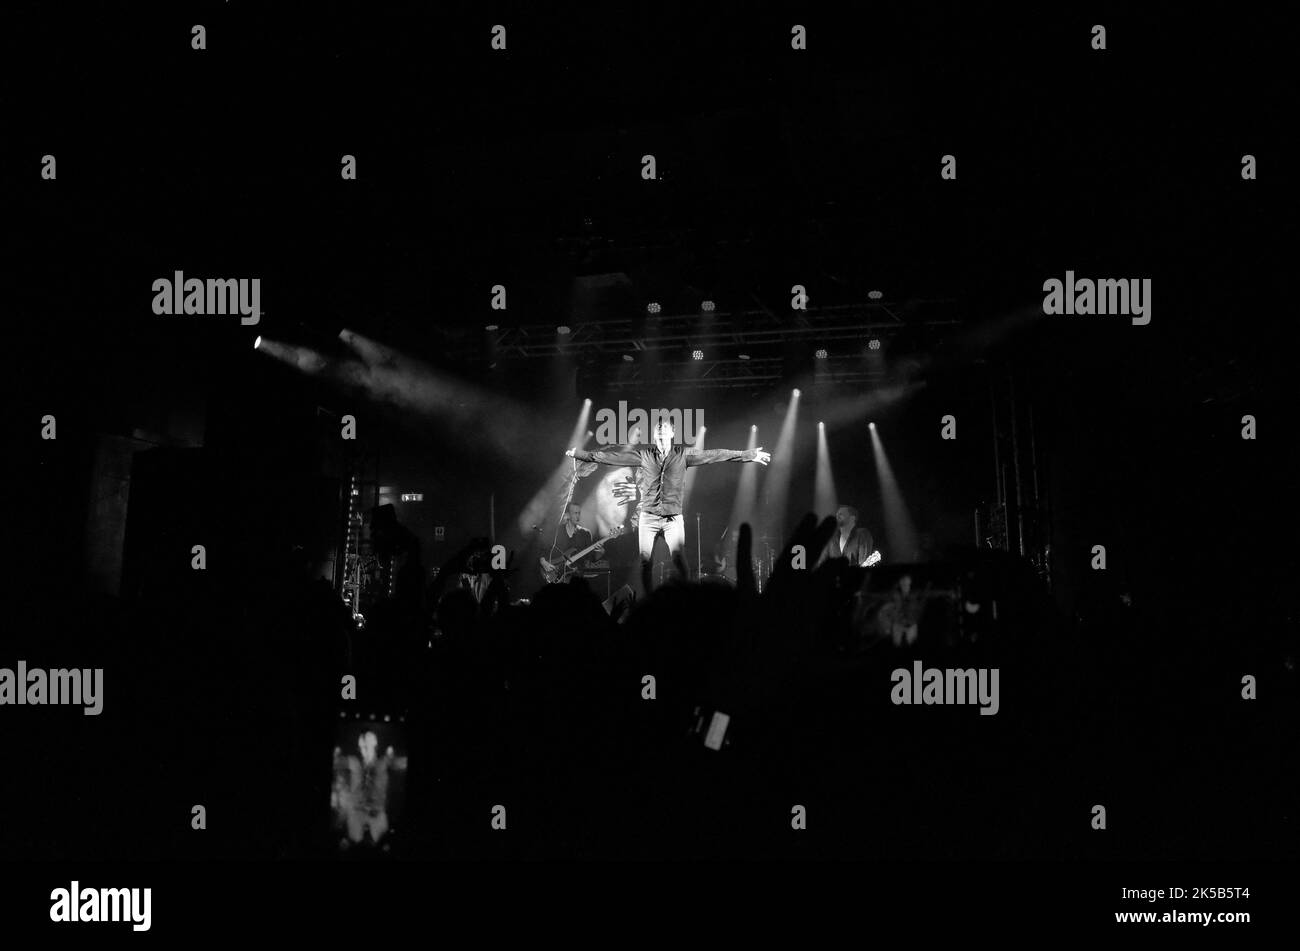 Sängerin und Band Suede auf der Bühne im Electric Ballroom, Camden, London, Großbritannien, 2022-10-05, Spielen ihres Autofiction-Albums. Stockfoto